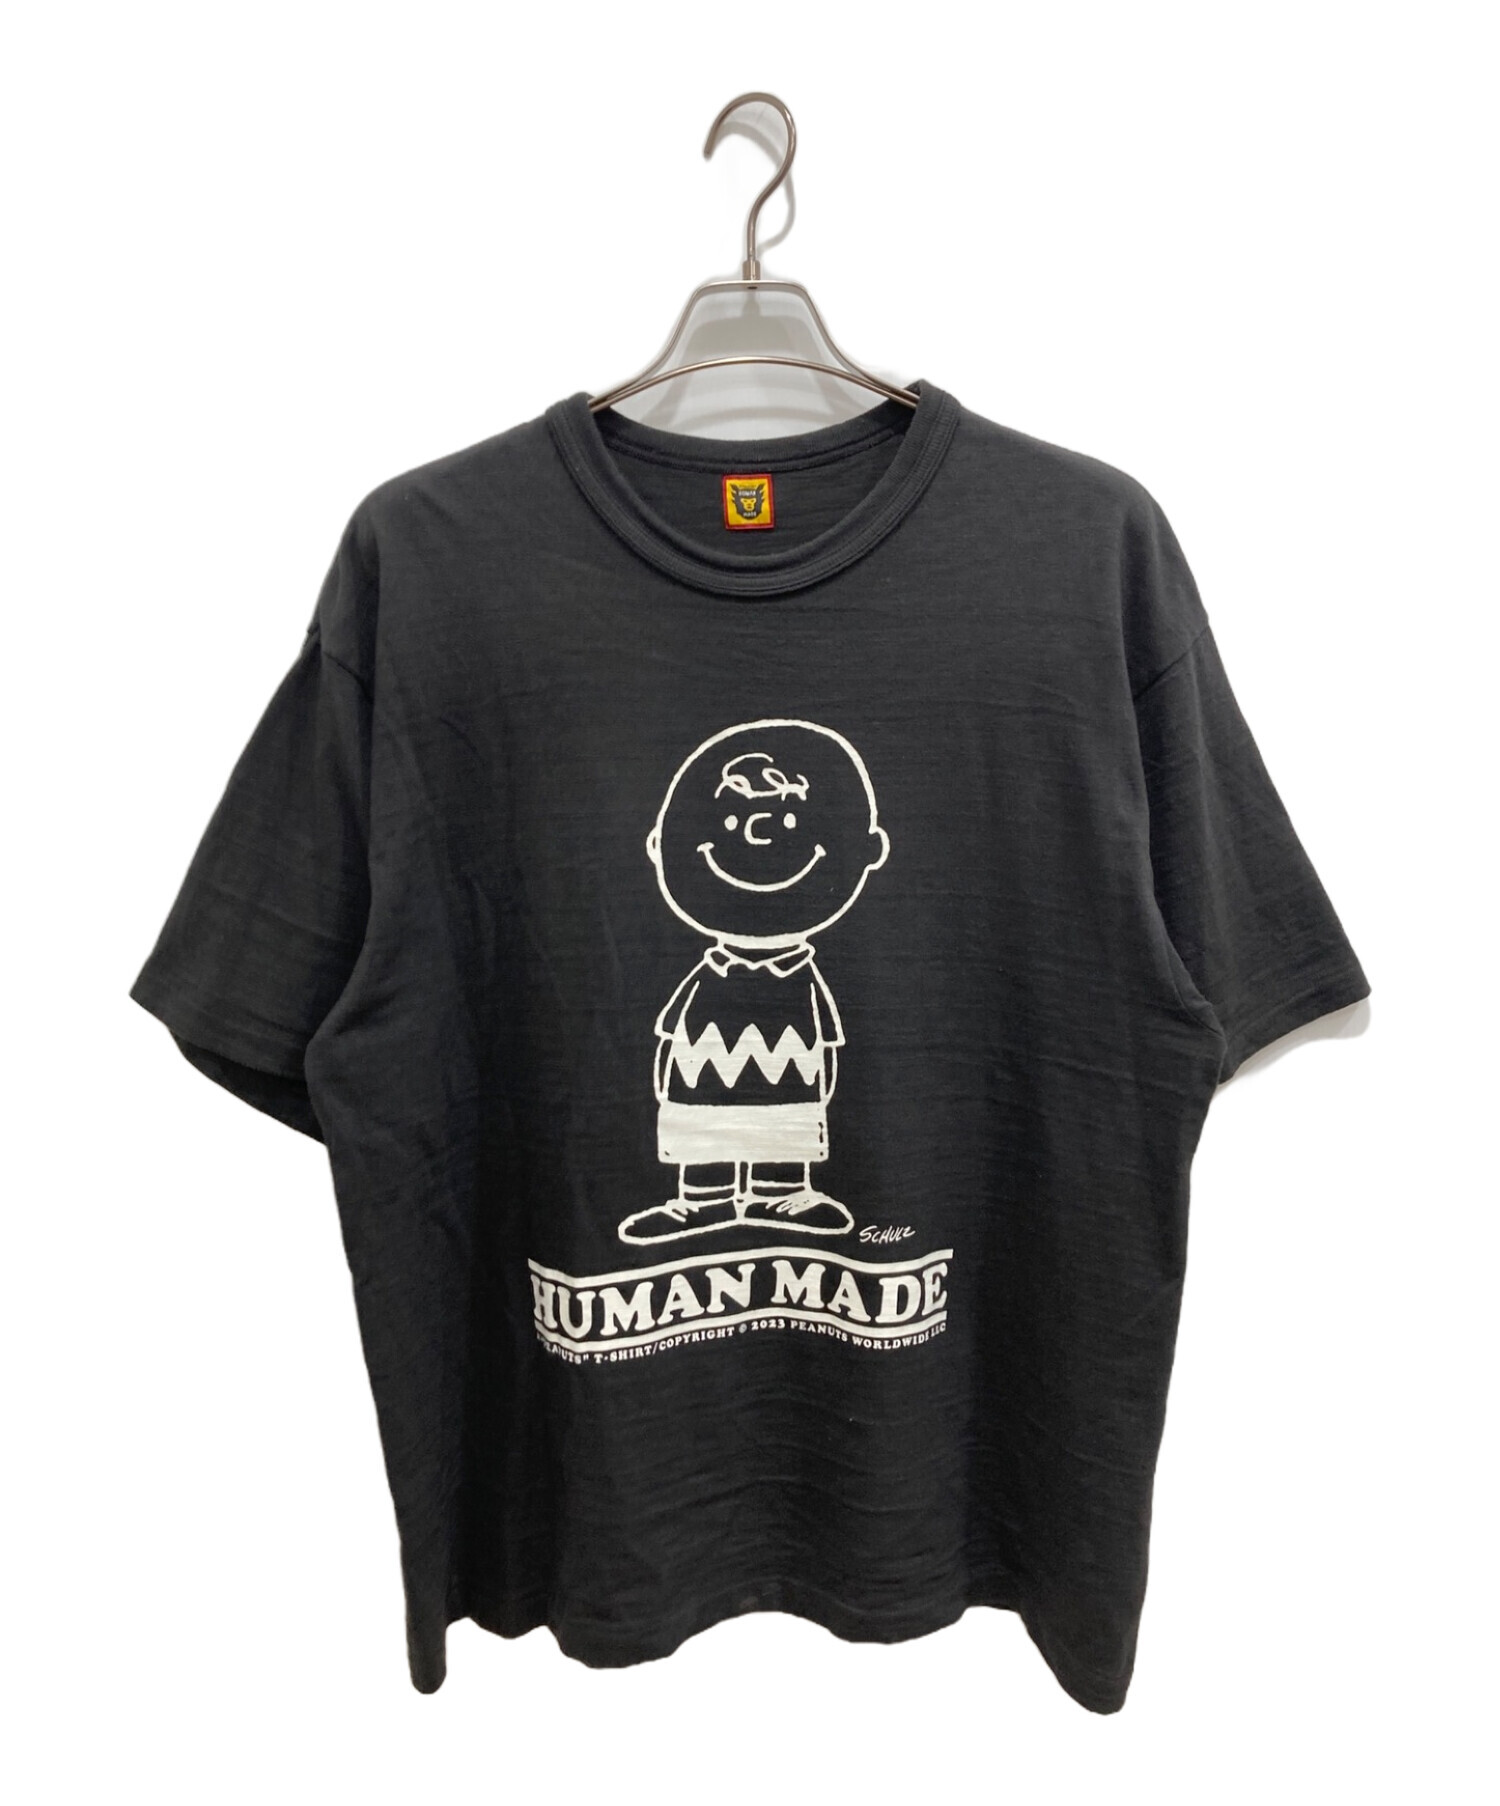 HUMAN MADE (ヒューマンメイド) Tシャツ ブラック サイズ:XXL